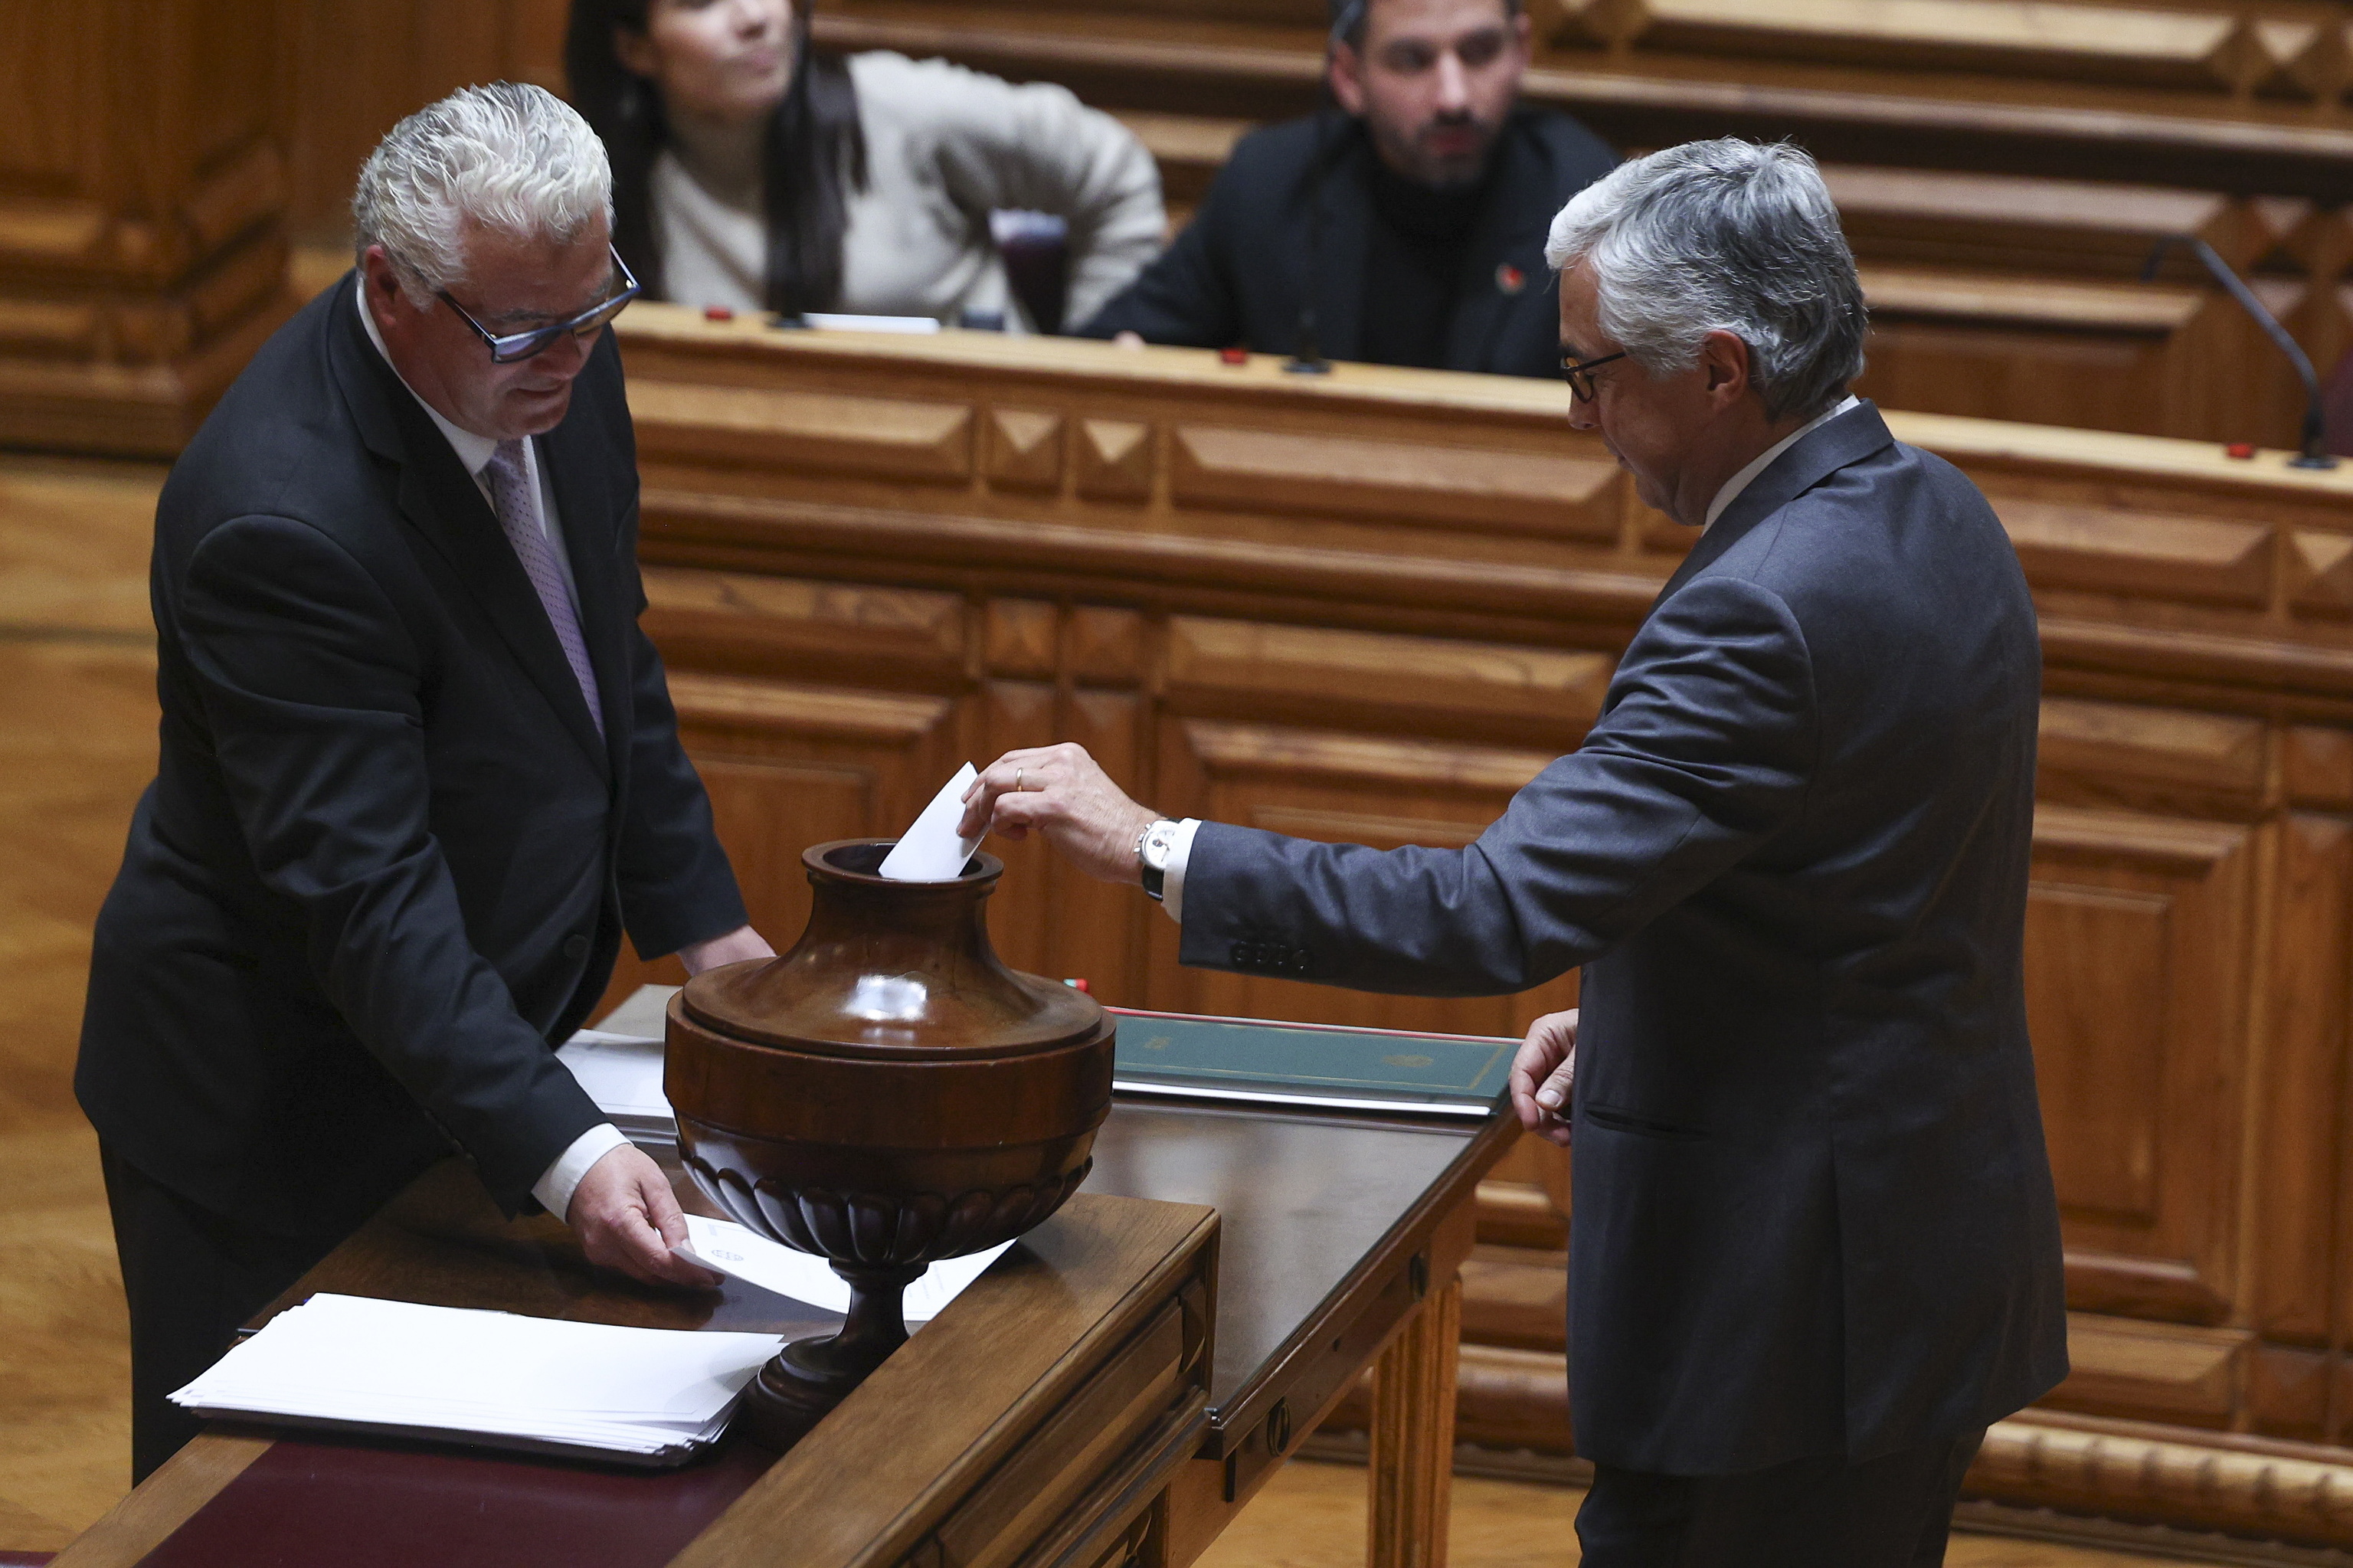 El Parlamento de Portugal, incapaz de elegir un presidente, se reúne para votar de nuevo